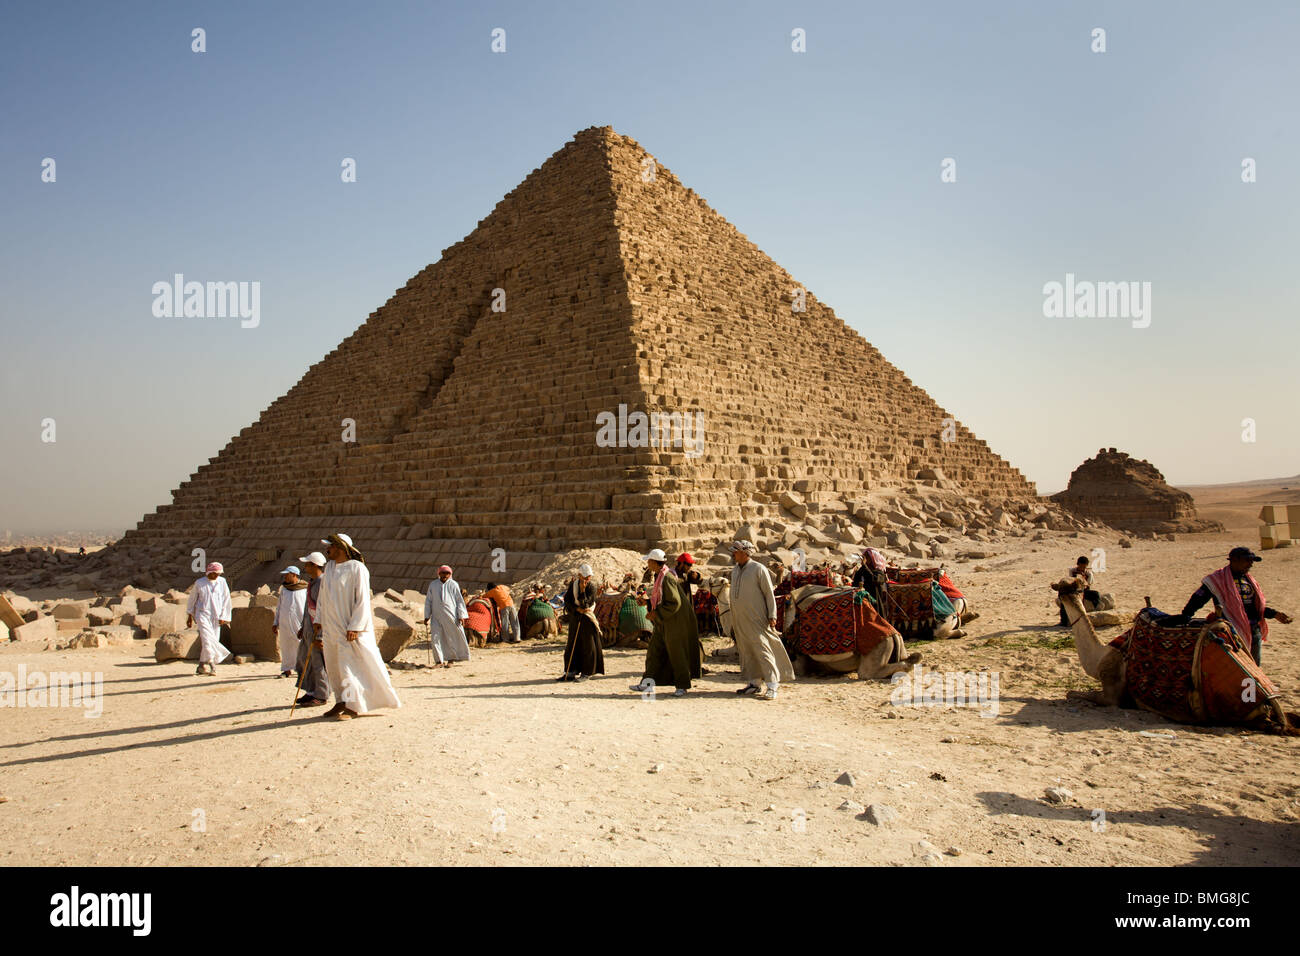 Kairo : Pyramide de Gizeh : Ripperblackstaff et Chameliers Banque D'Images